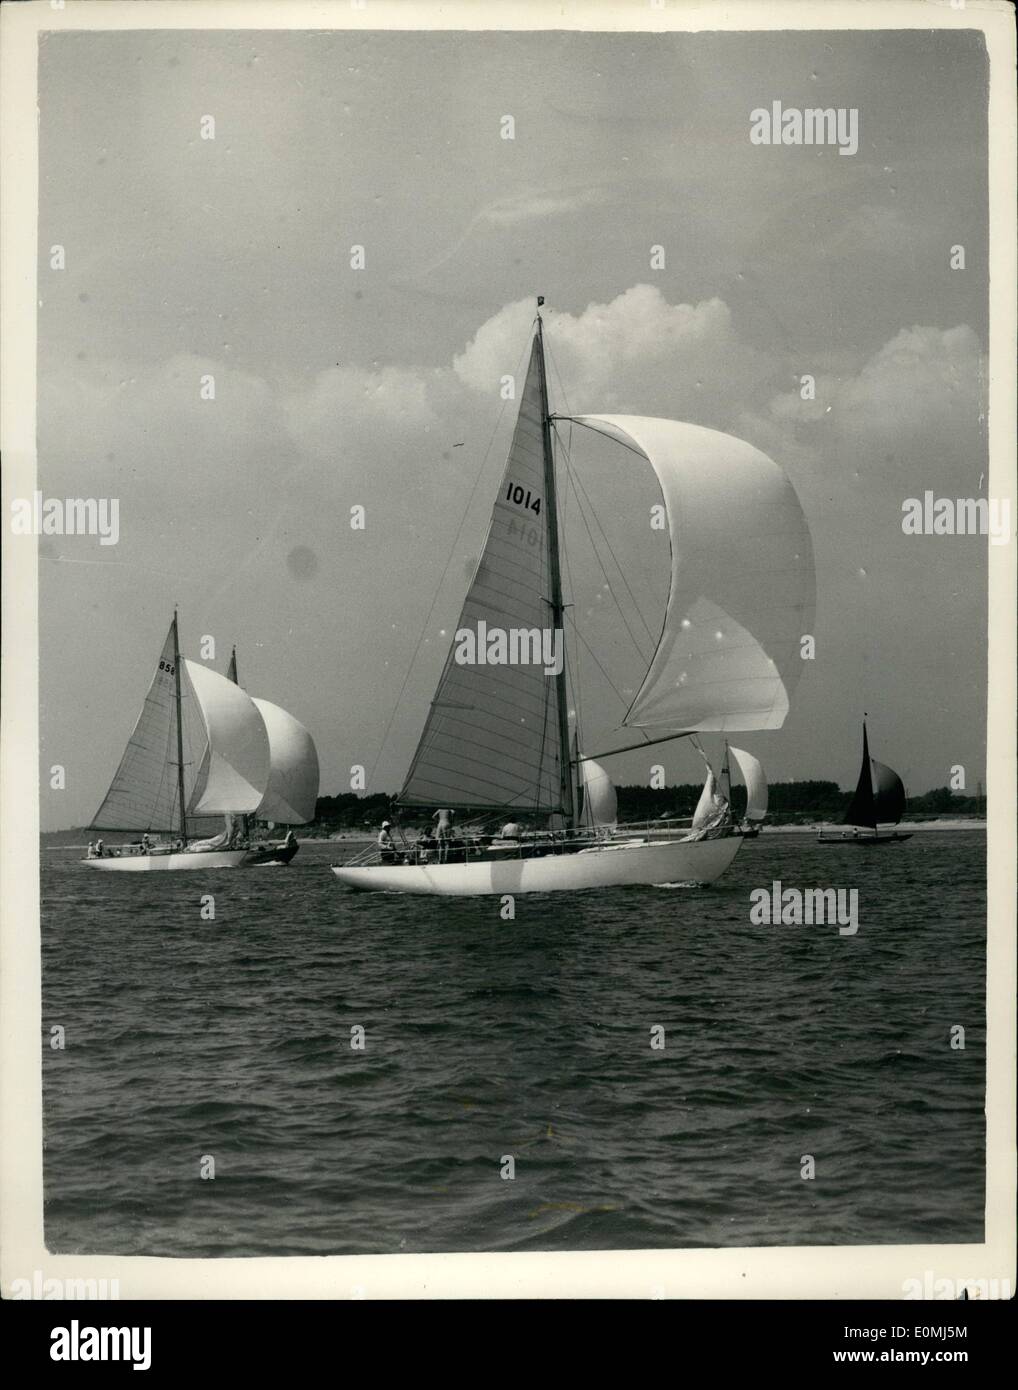 8. August 1955 Rennen - Cowes Regatta - Yachten bei strahlendem Sonnenschein. Foto zeigt Spinnaker in der Handicap-Rennen für Yachten von 24-30 ft R.O.R.C. Bewertung in Cowes heute sind. Stockfoto